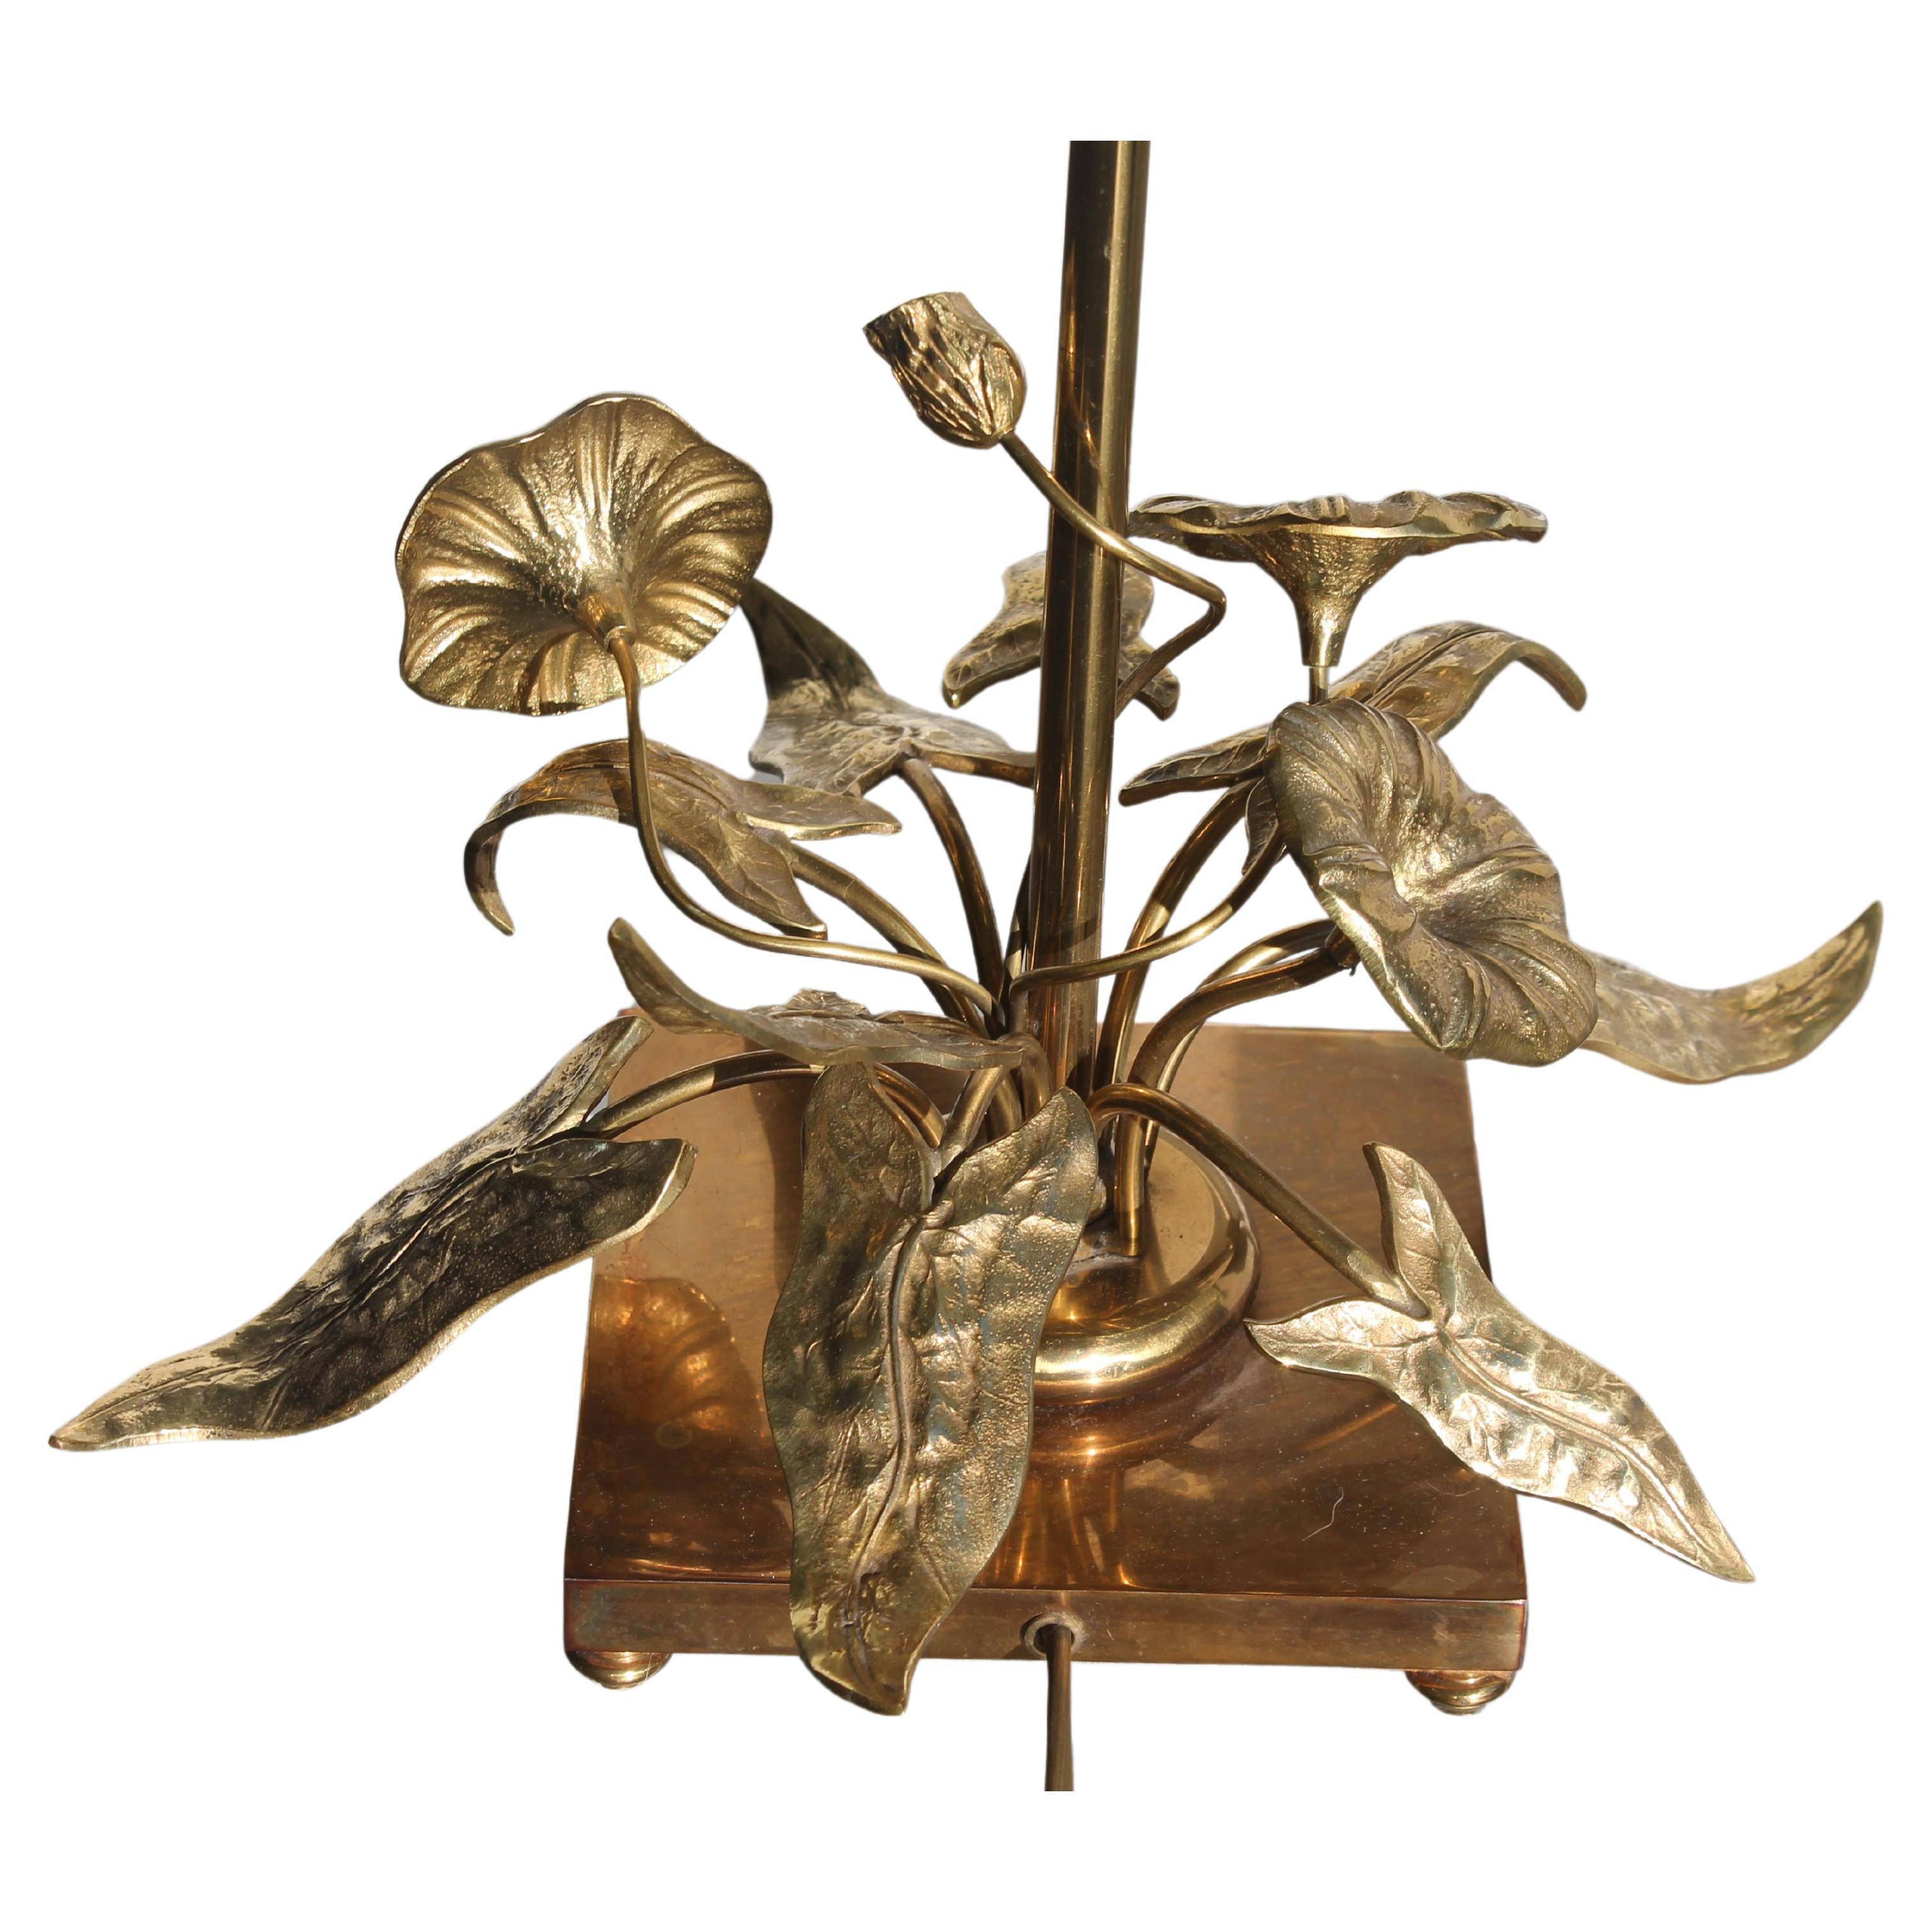 1960er Jahre Französisch Mid Century Modern Vergoldete Bronze FloralTable Lamp att. Maison Charles